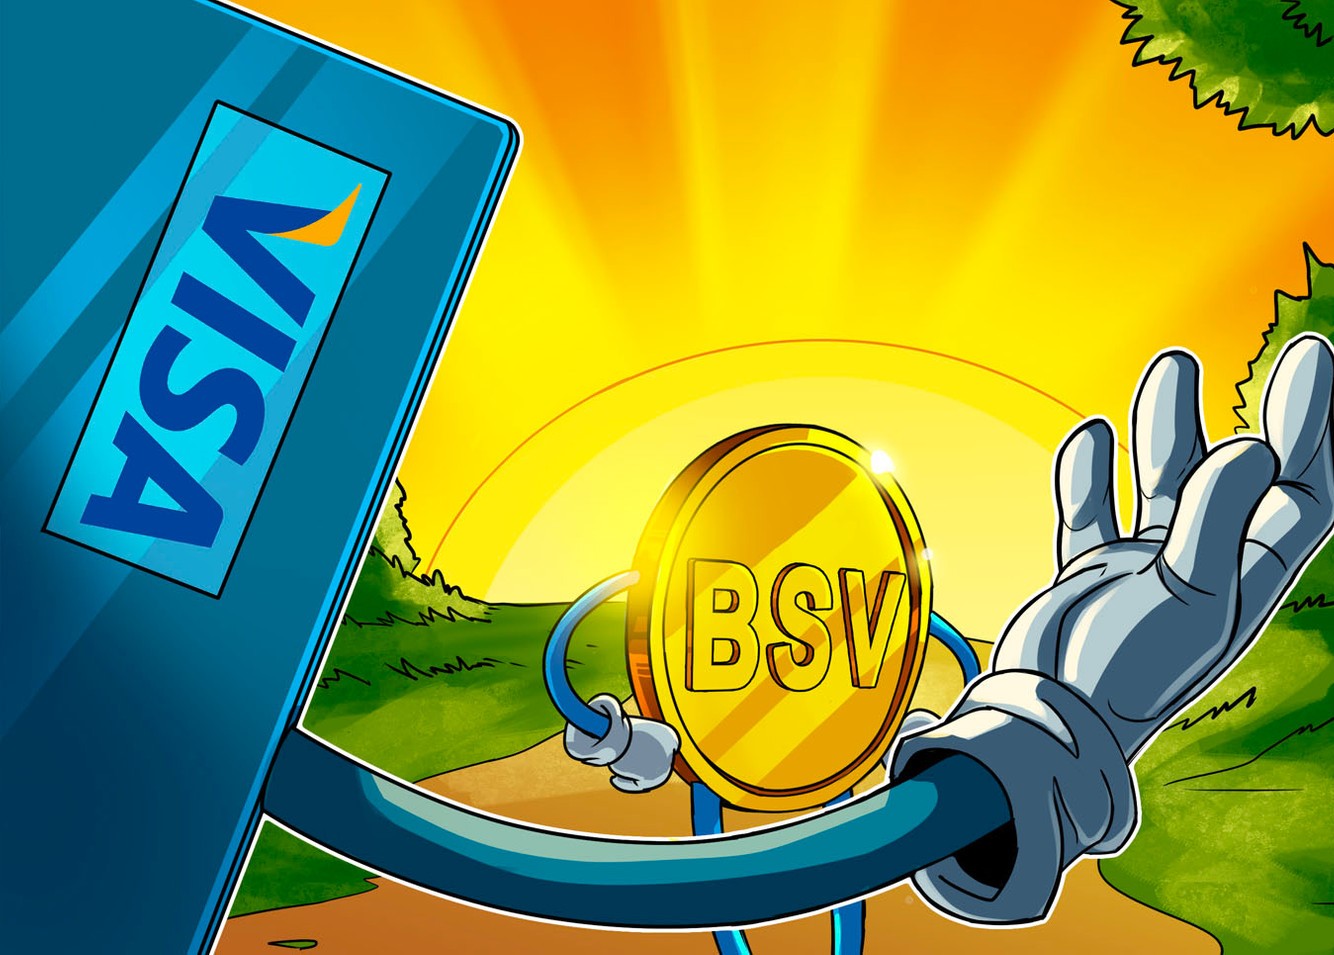 ارز دیجیتال BSV بر روی چه کیف پول های ذخیره می شود؟